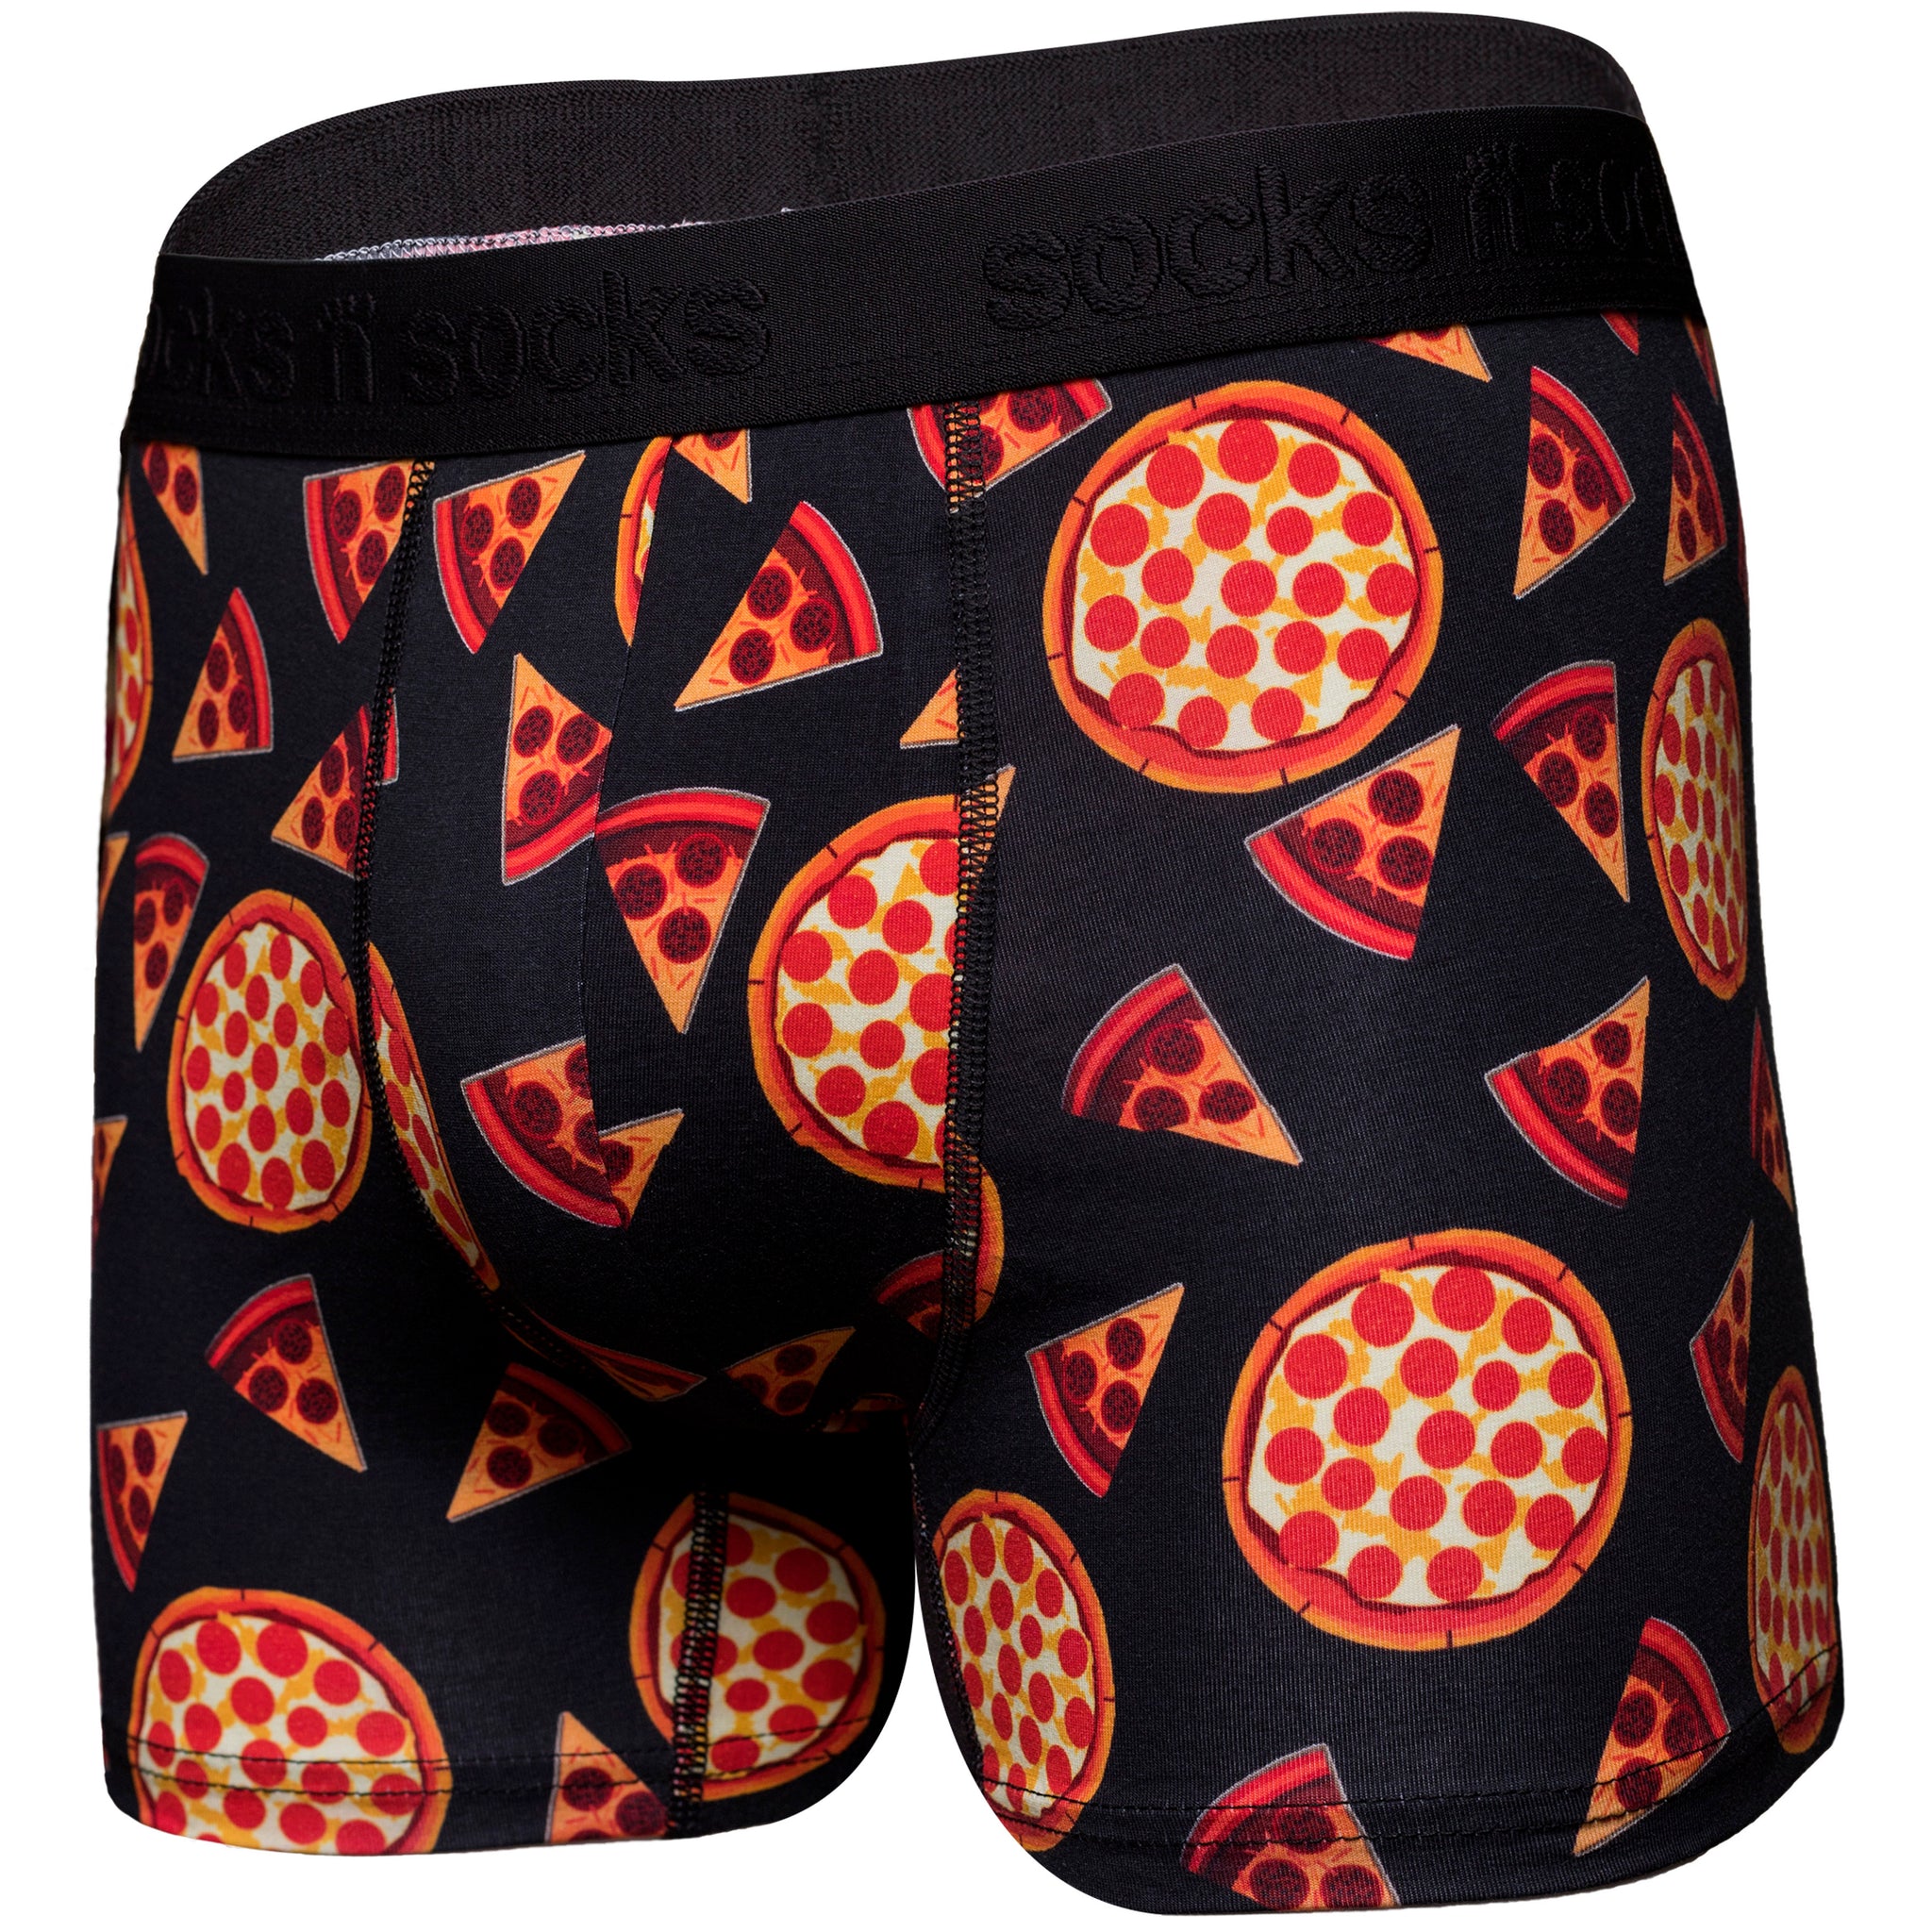 Space Pizza - Mens Boxer Briefs (Size: 3XL), Men's